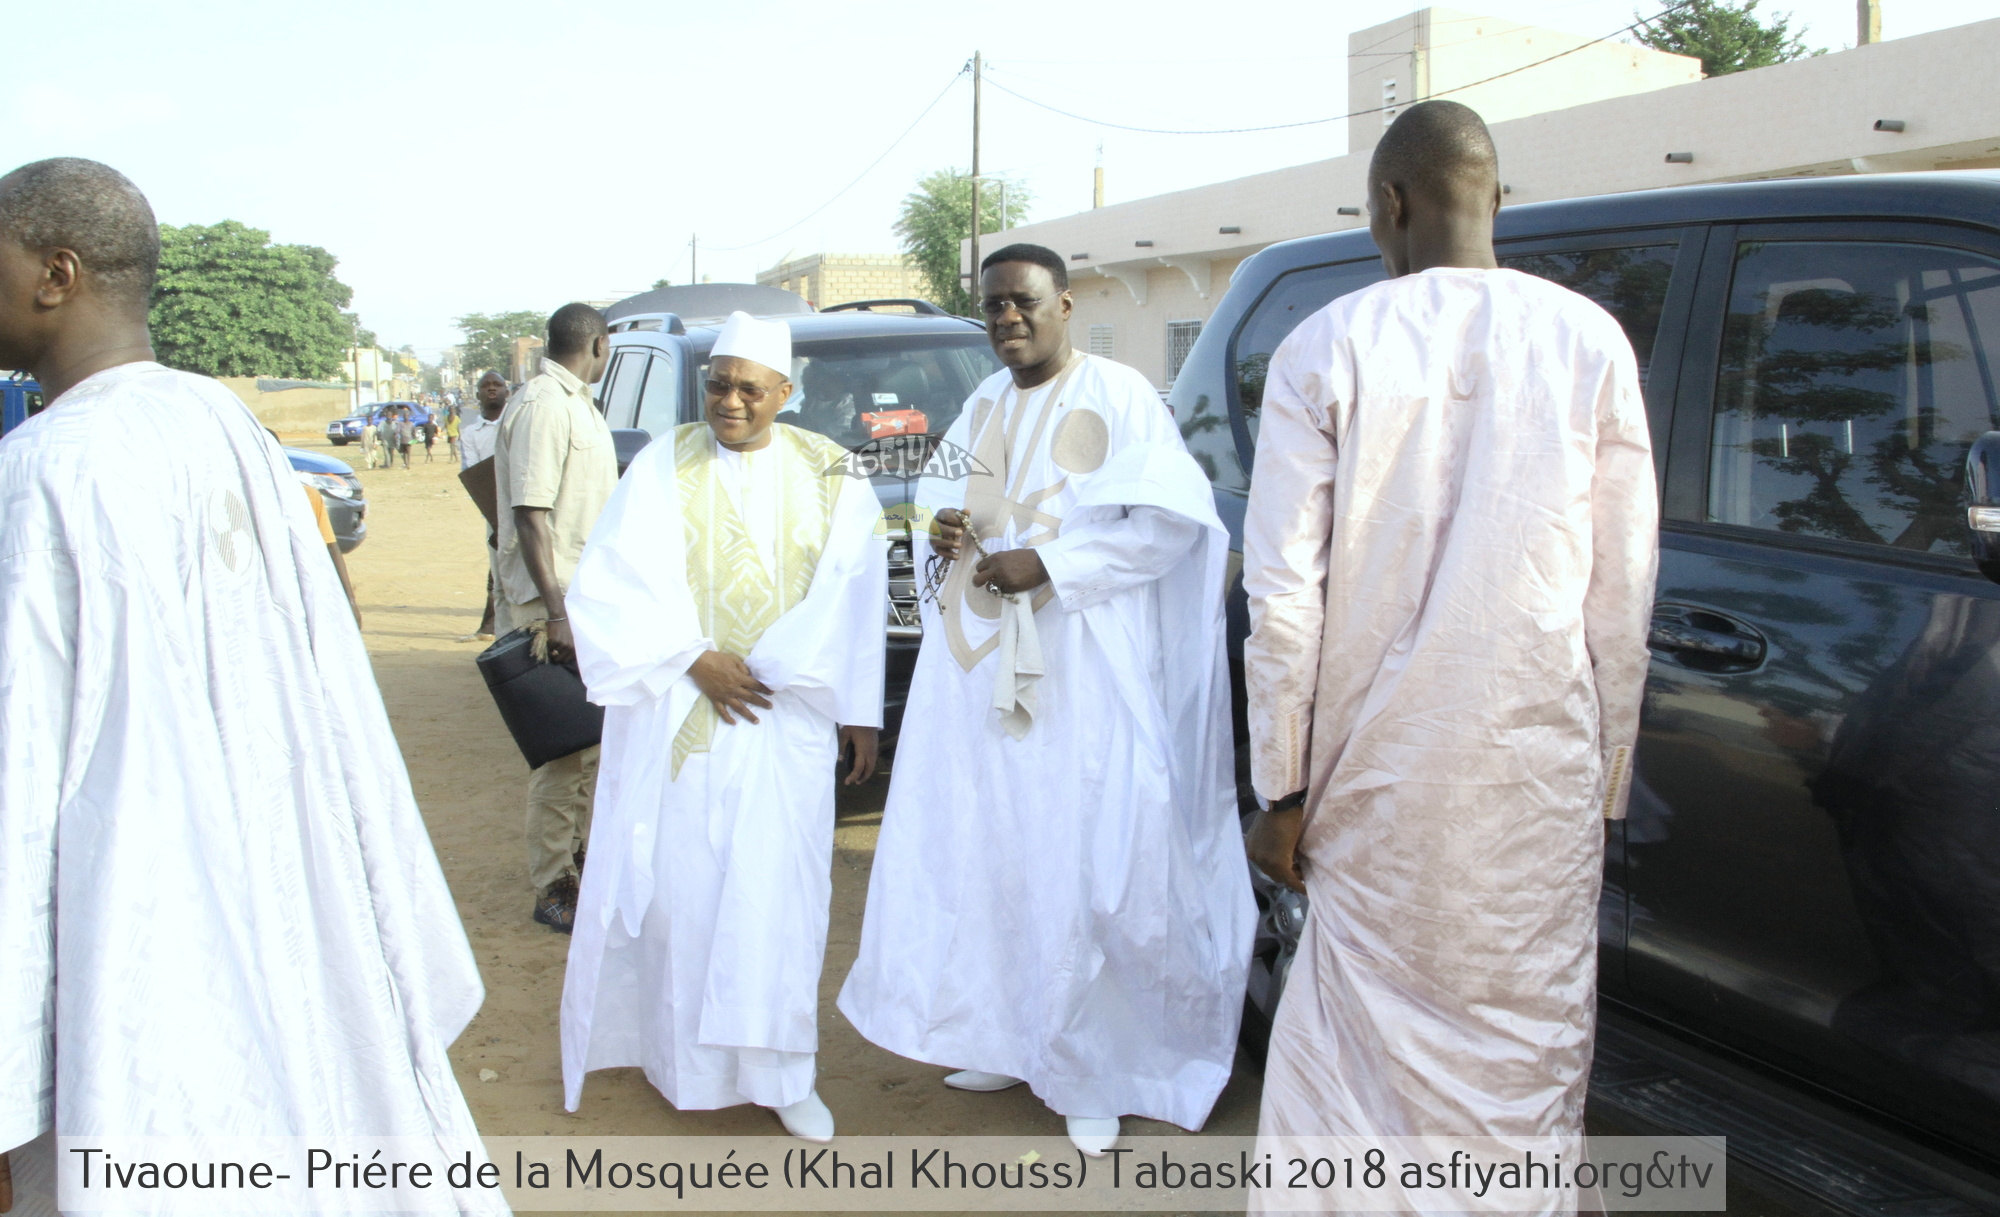 PHOTOS - TABASKI 2018 - Les Images de la Priere à la Mosquée de Khalkhouss en presence du Khalif General des Tidianes Serigne Mbaye SY Mansour